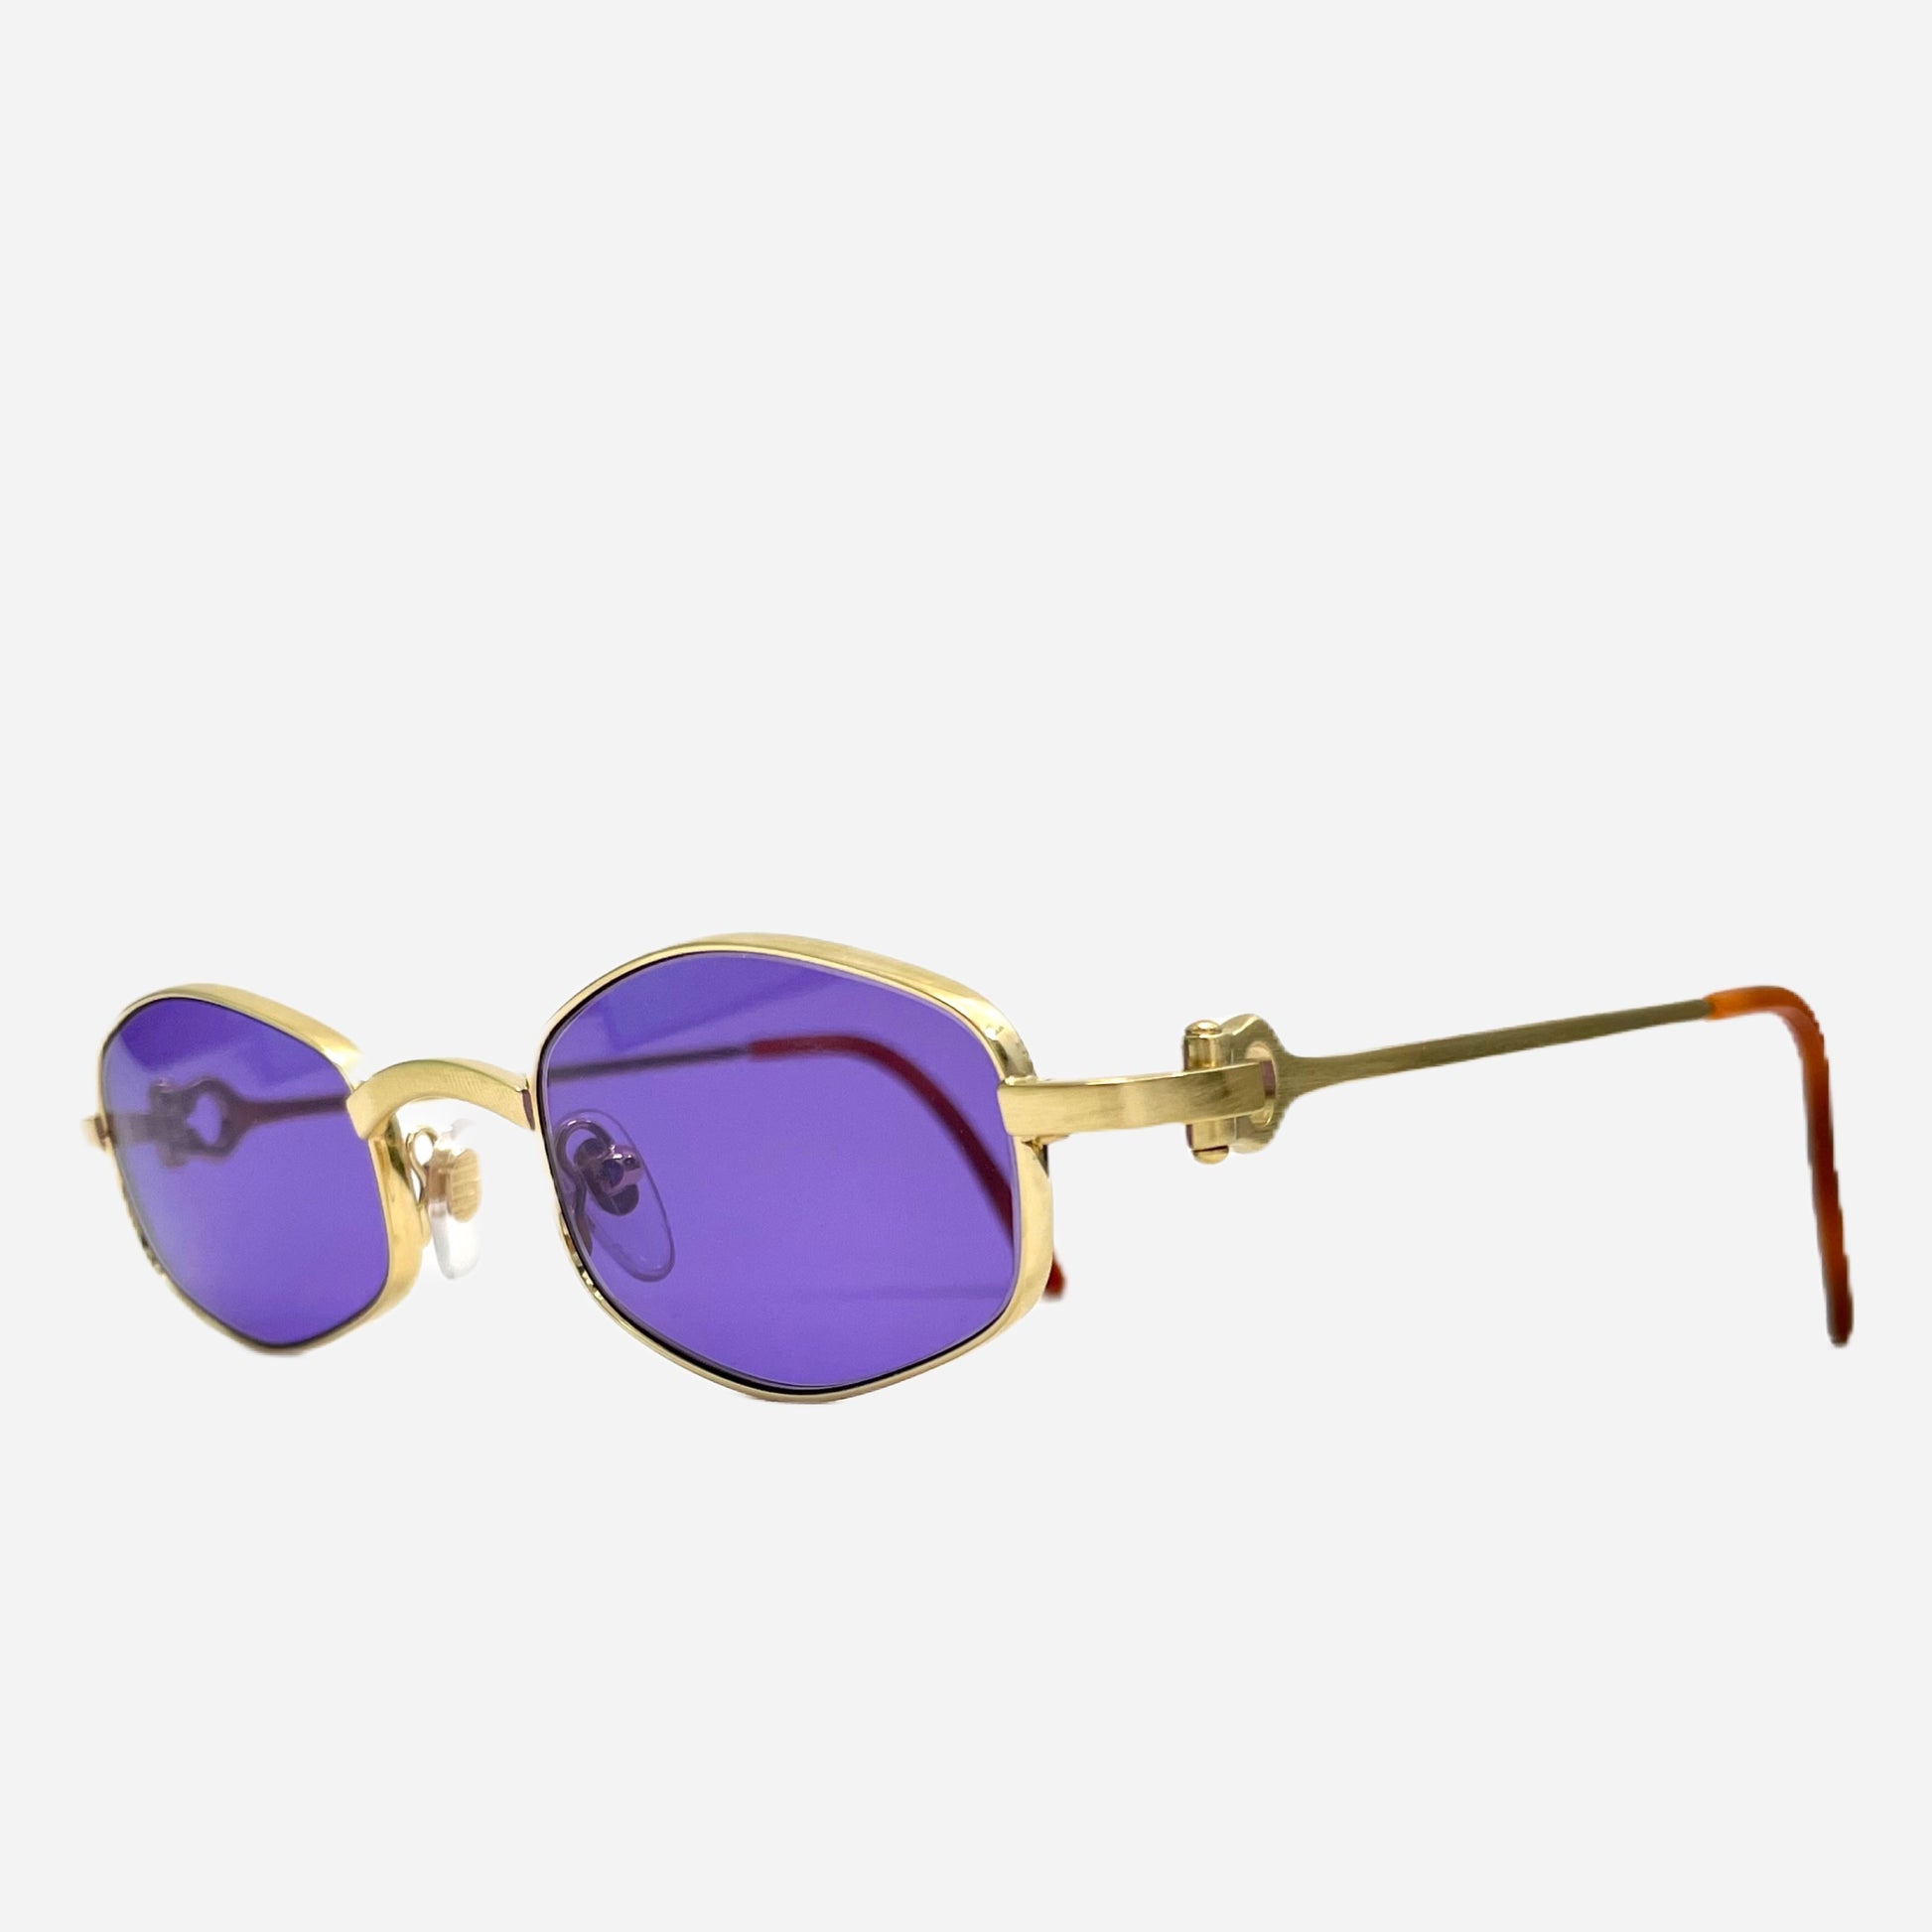 Vintage-Cartier-Octagon-24-Carats-Sonnenbrille-Sunglasses-the-seekers-vintage-designer-sunglasses-front